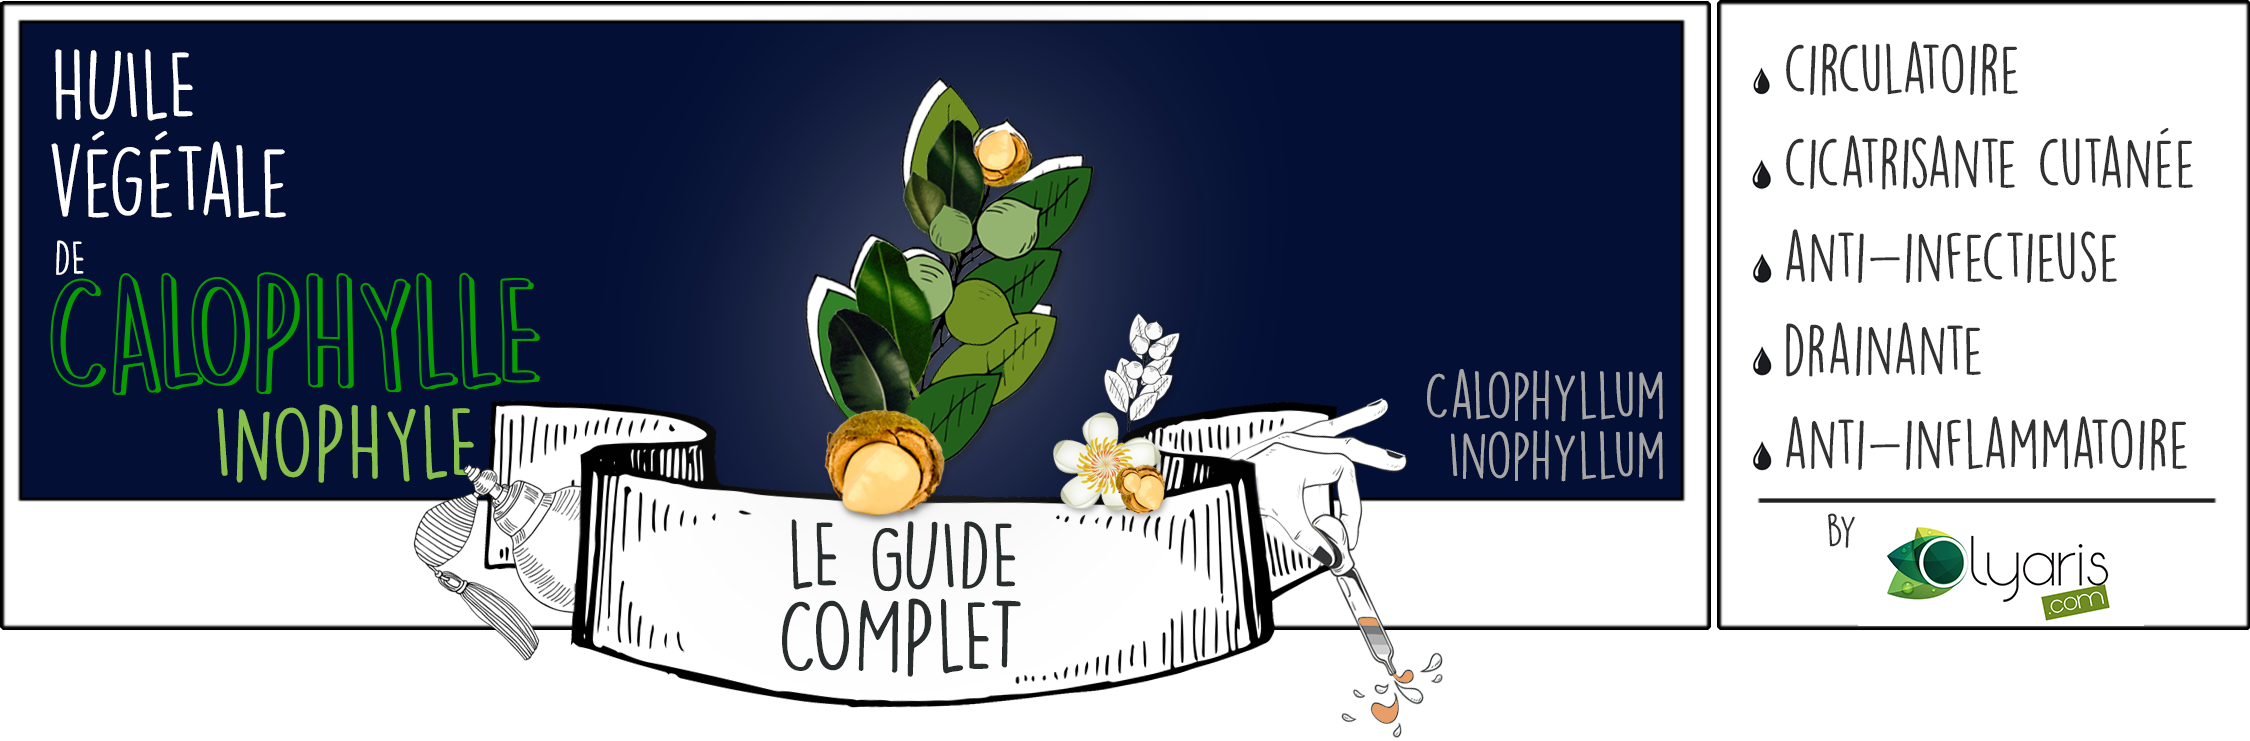 Huile Végétale de Calophylle Inophyle (Tamanu) : le Guide d'Utilisation Complet - Olyaris